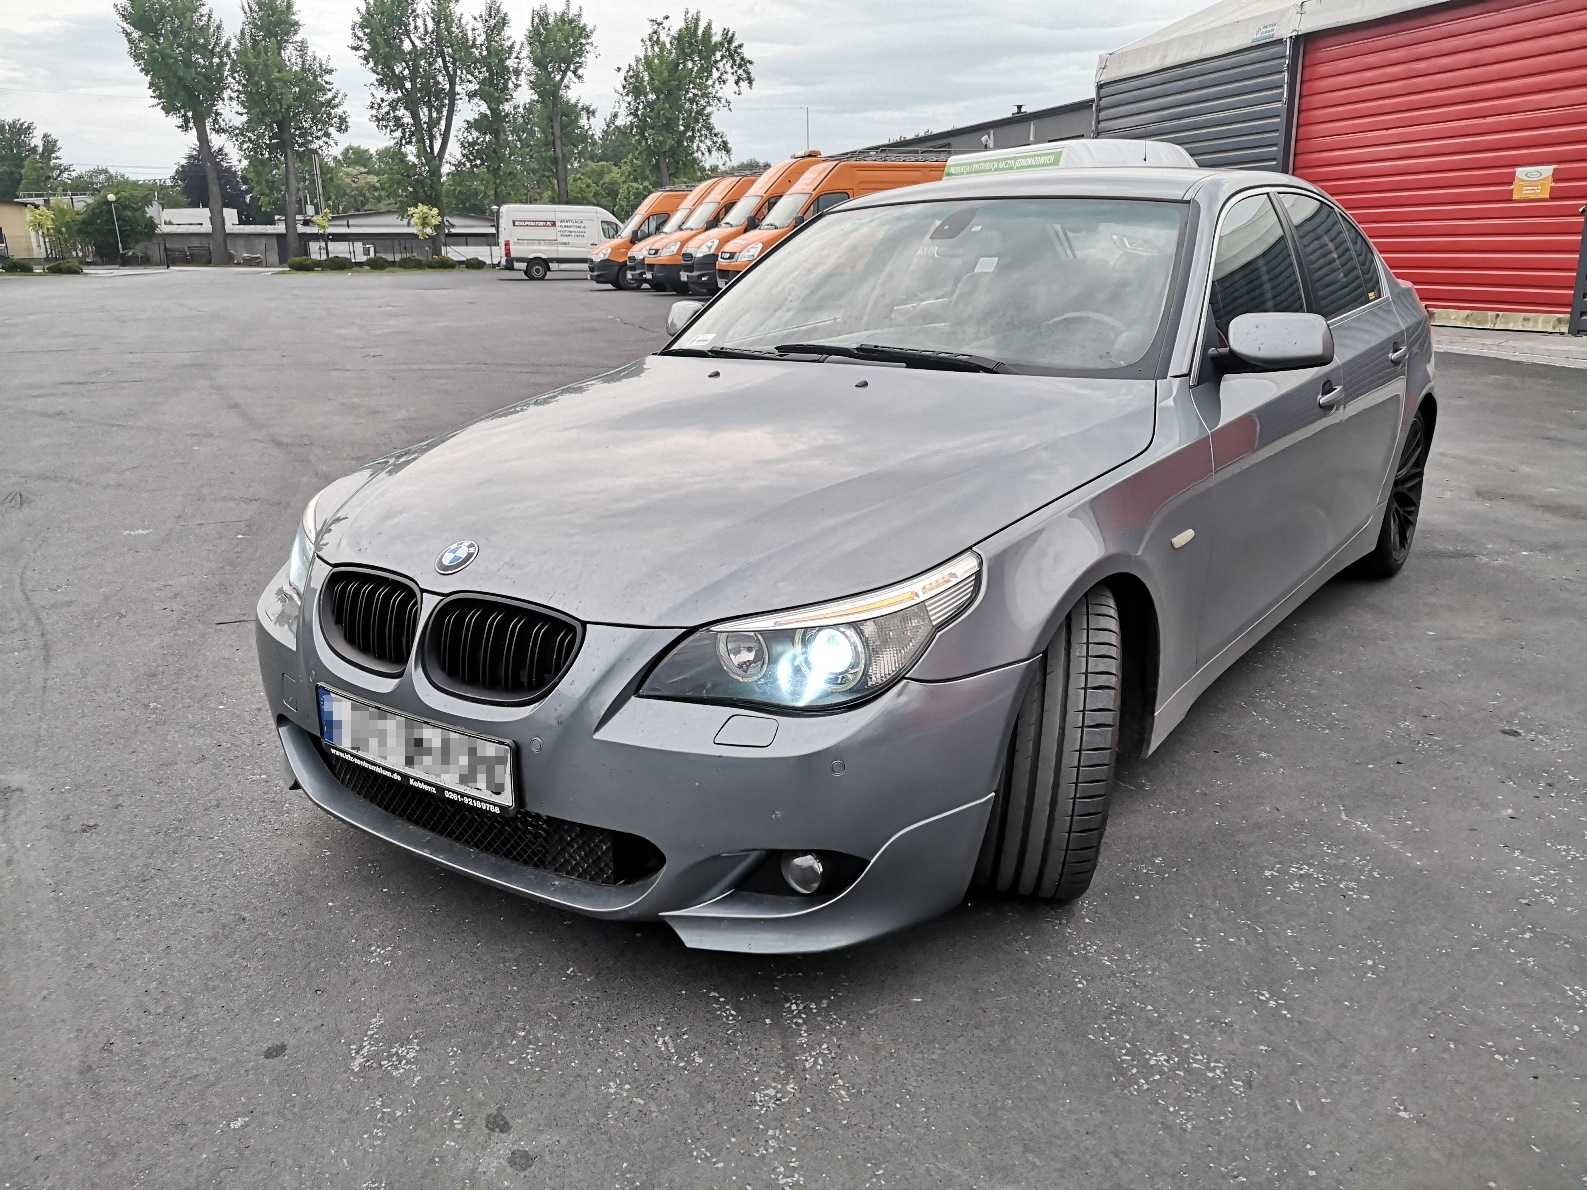 BMW E60 530D 218KM >> 380KM 781Nm Boost Factory